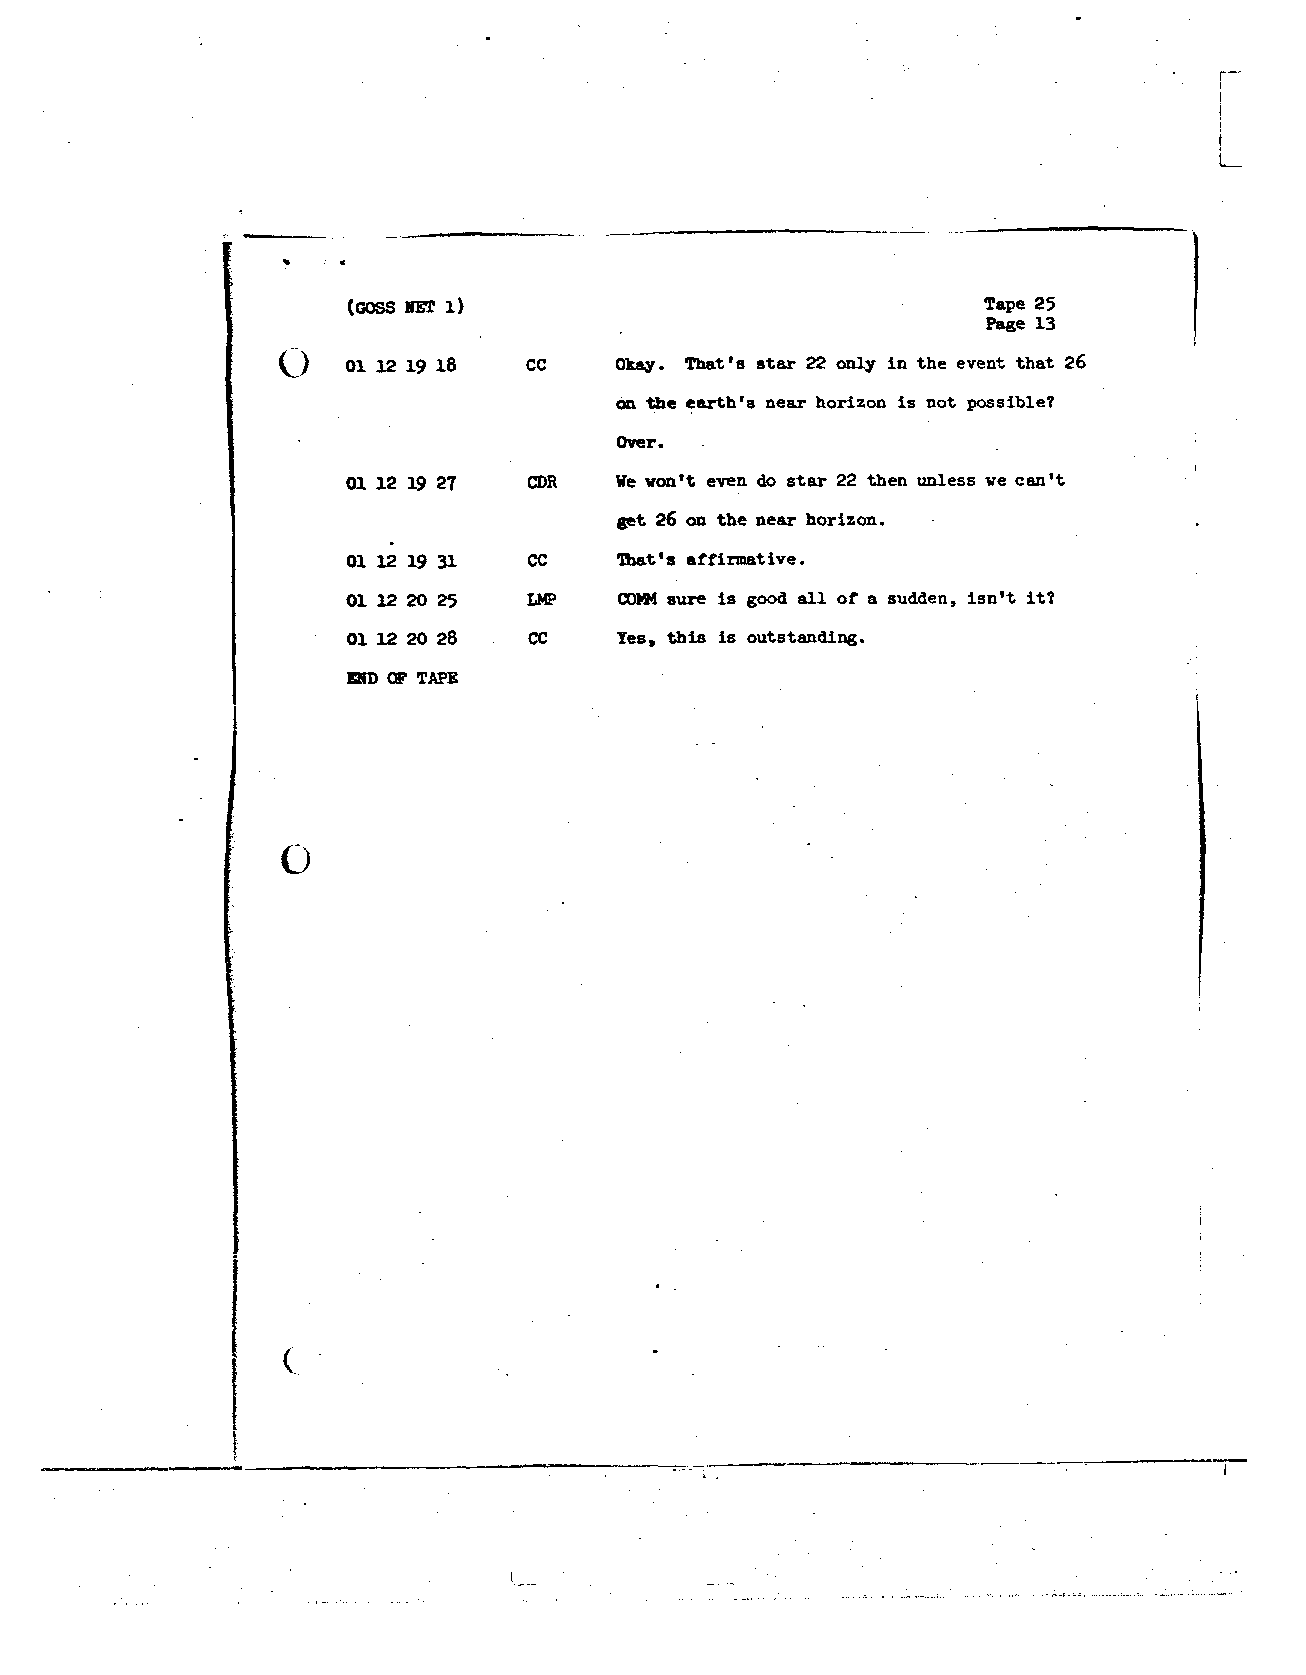 Page 211 of Apollo 8’s original transcript